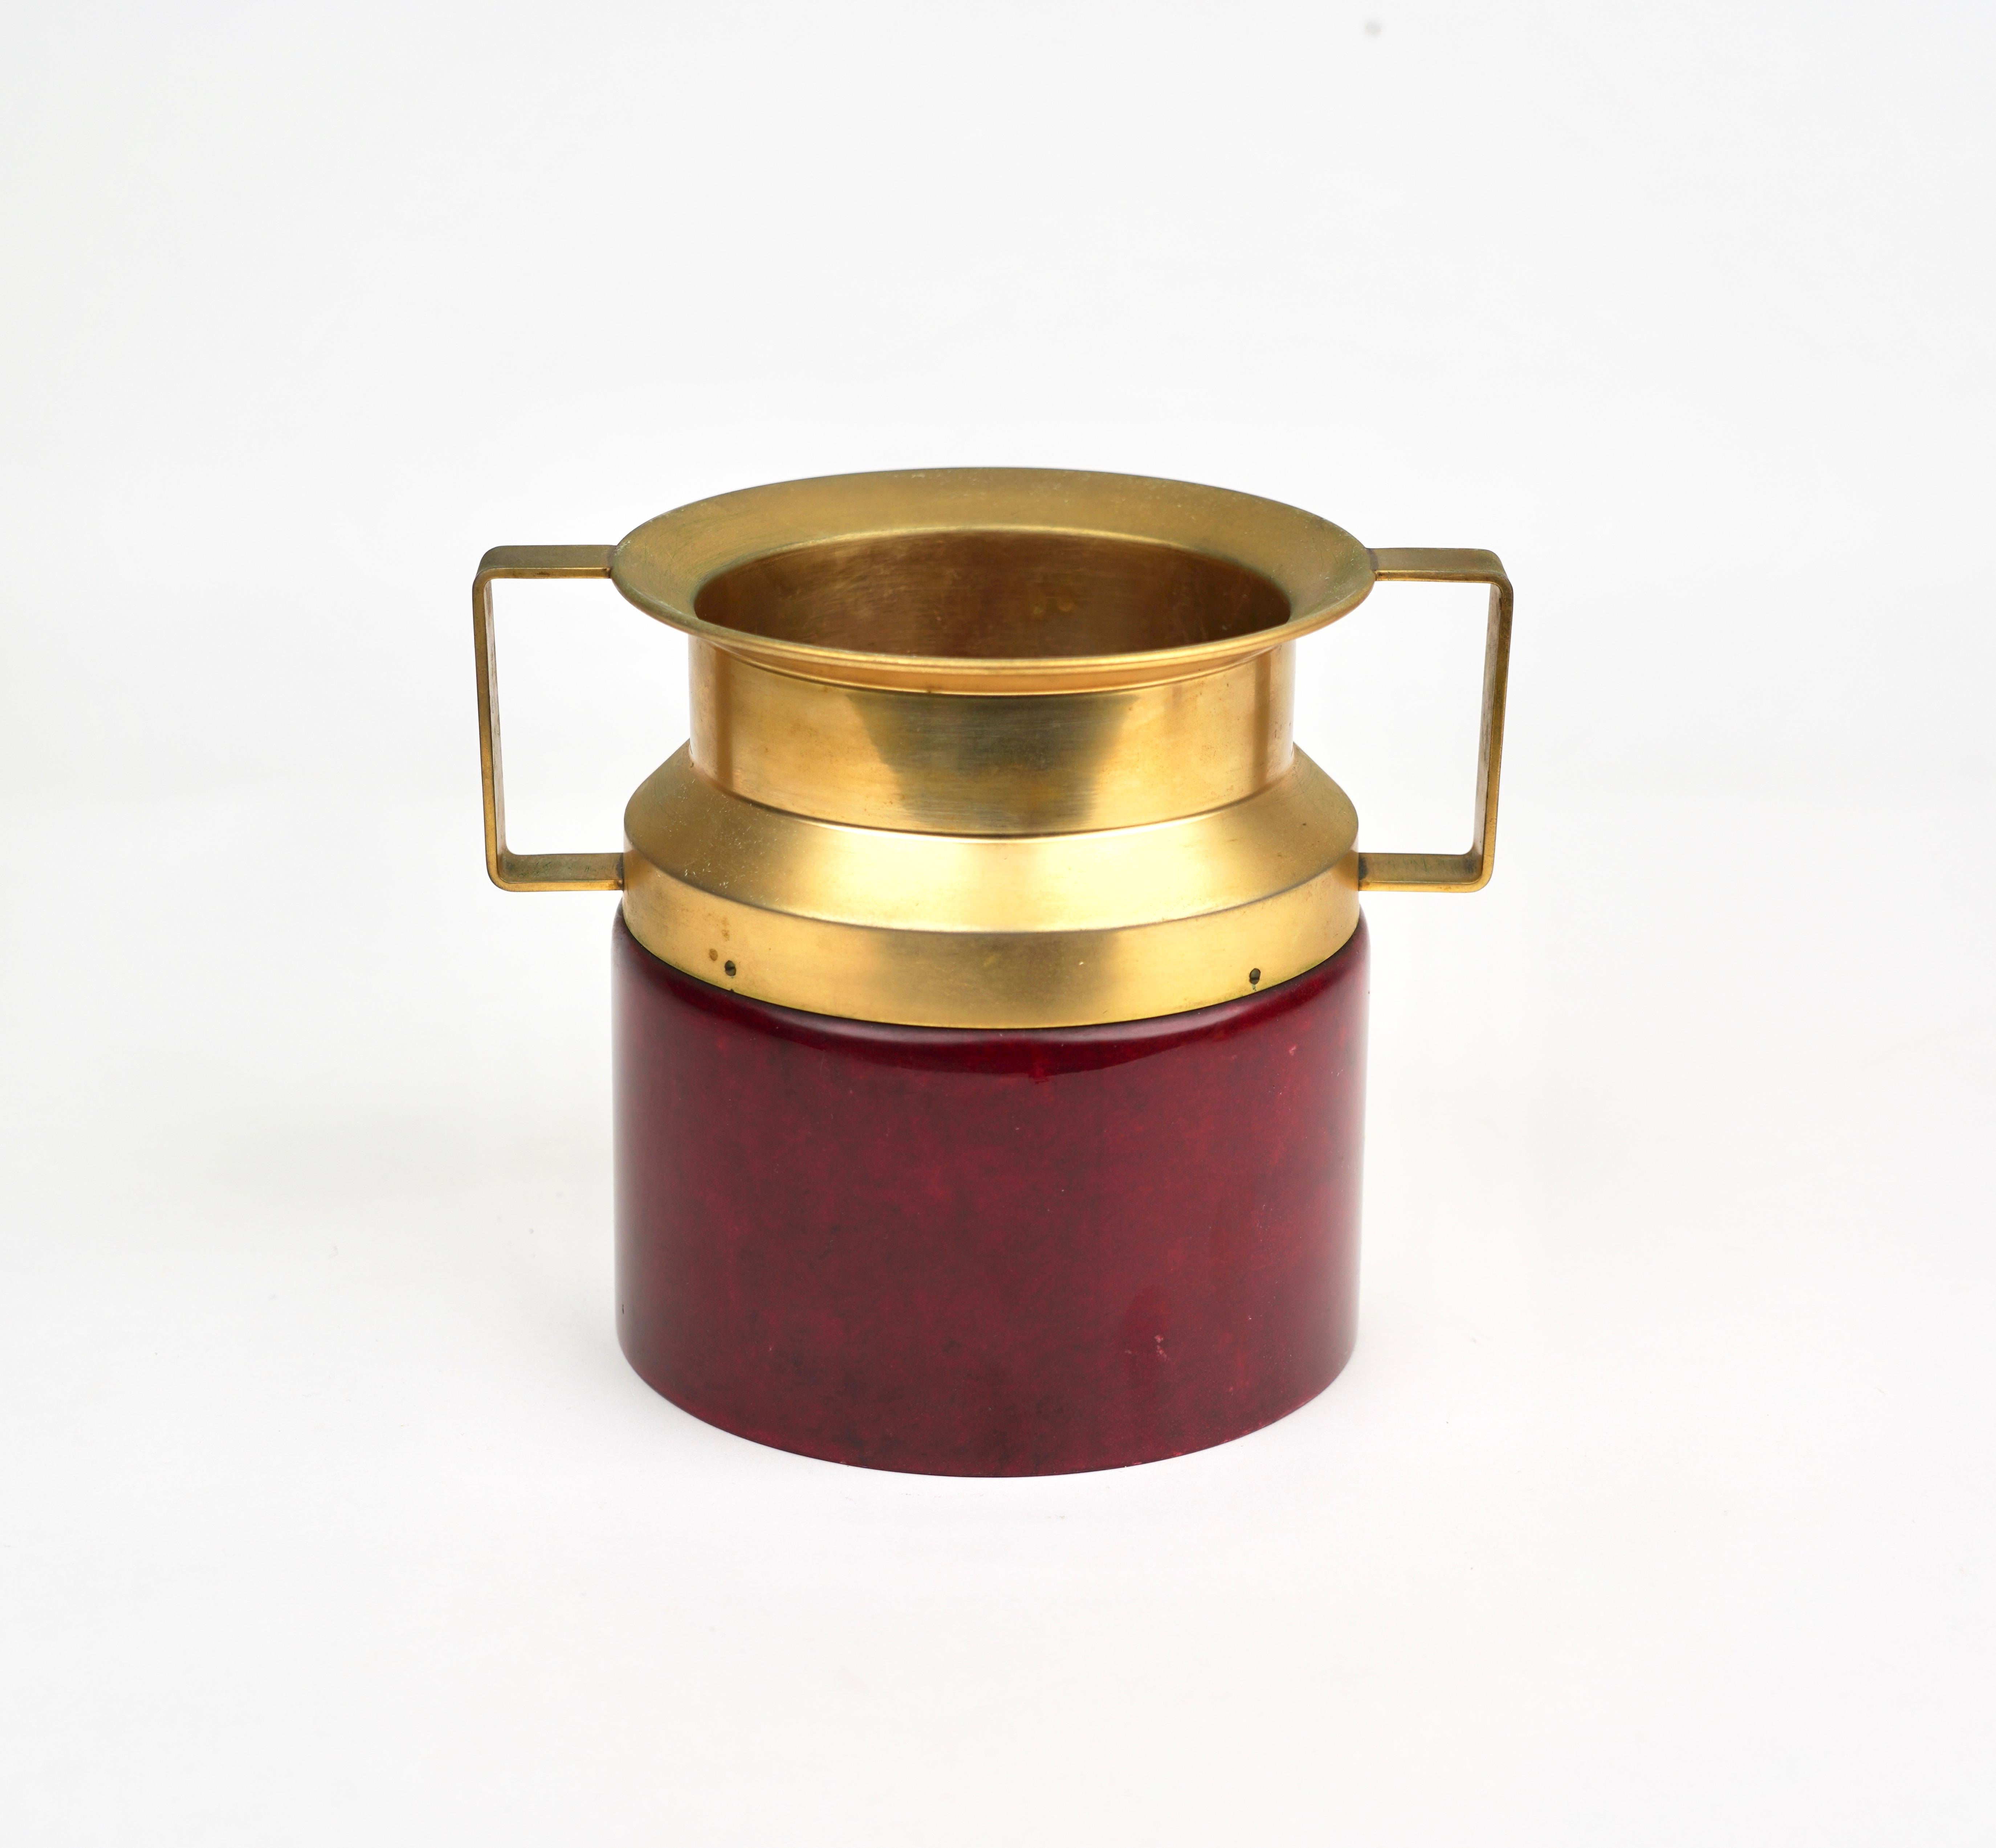 Ice bucket by the Italian designer Aldo Tura (original label still attached - Creazione Tura) in red goatskin and brass,.

Made in Italy 1960s.

